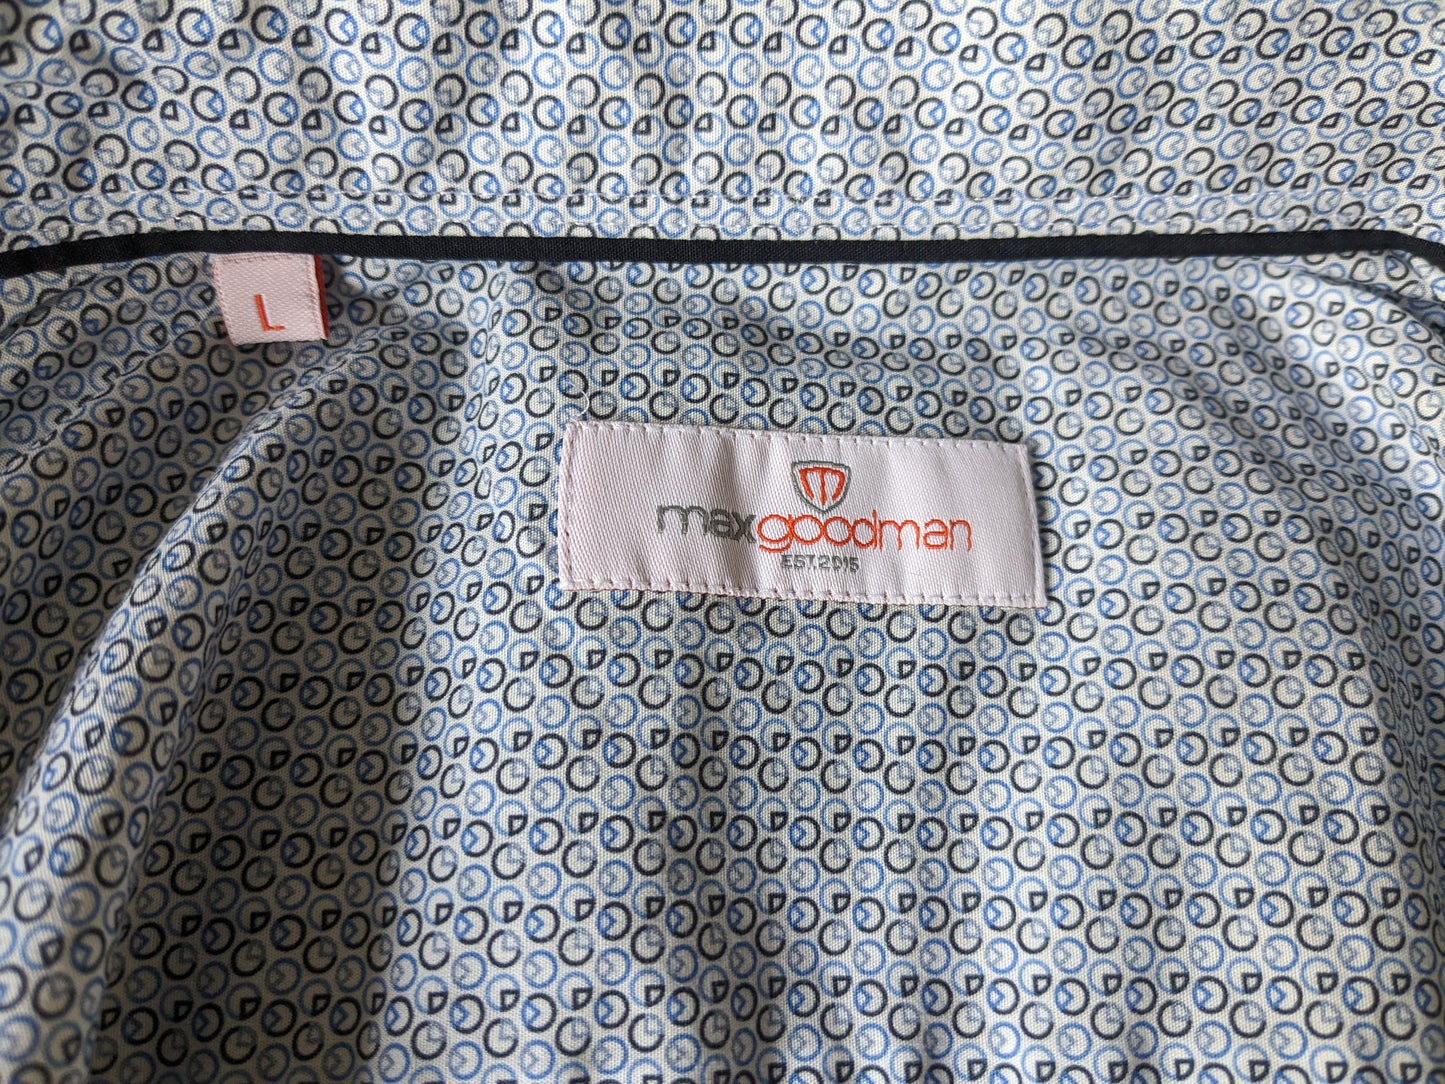 Max Goodman shirt. Blue brown white print. Size L.